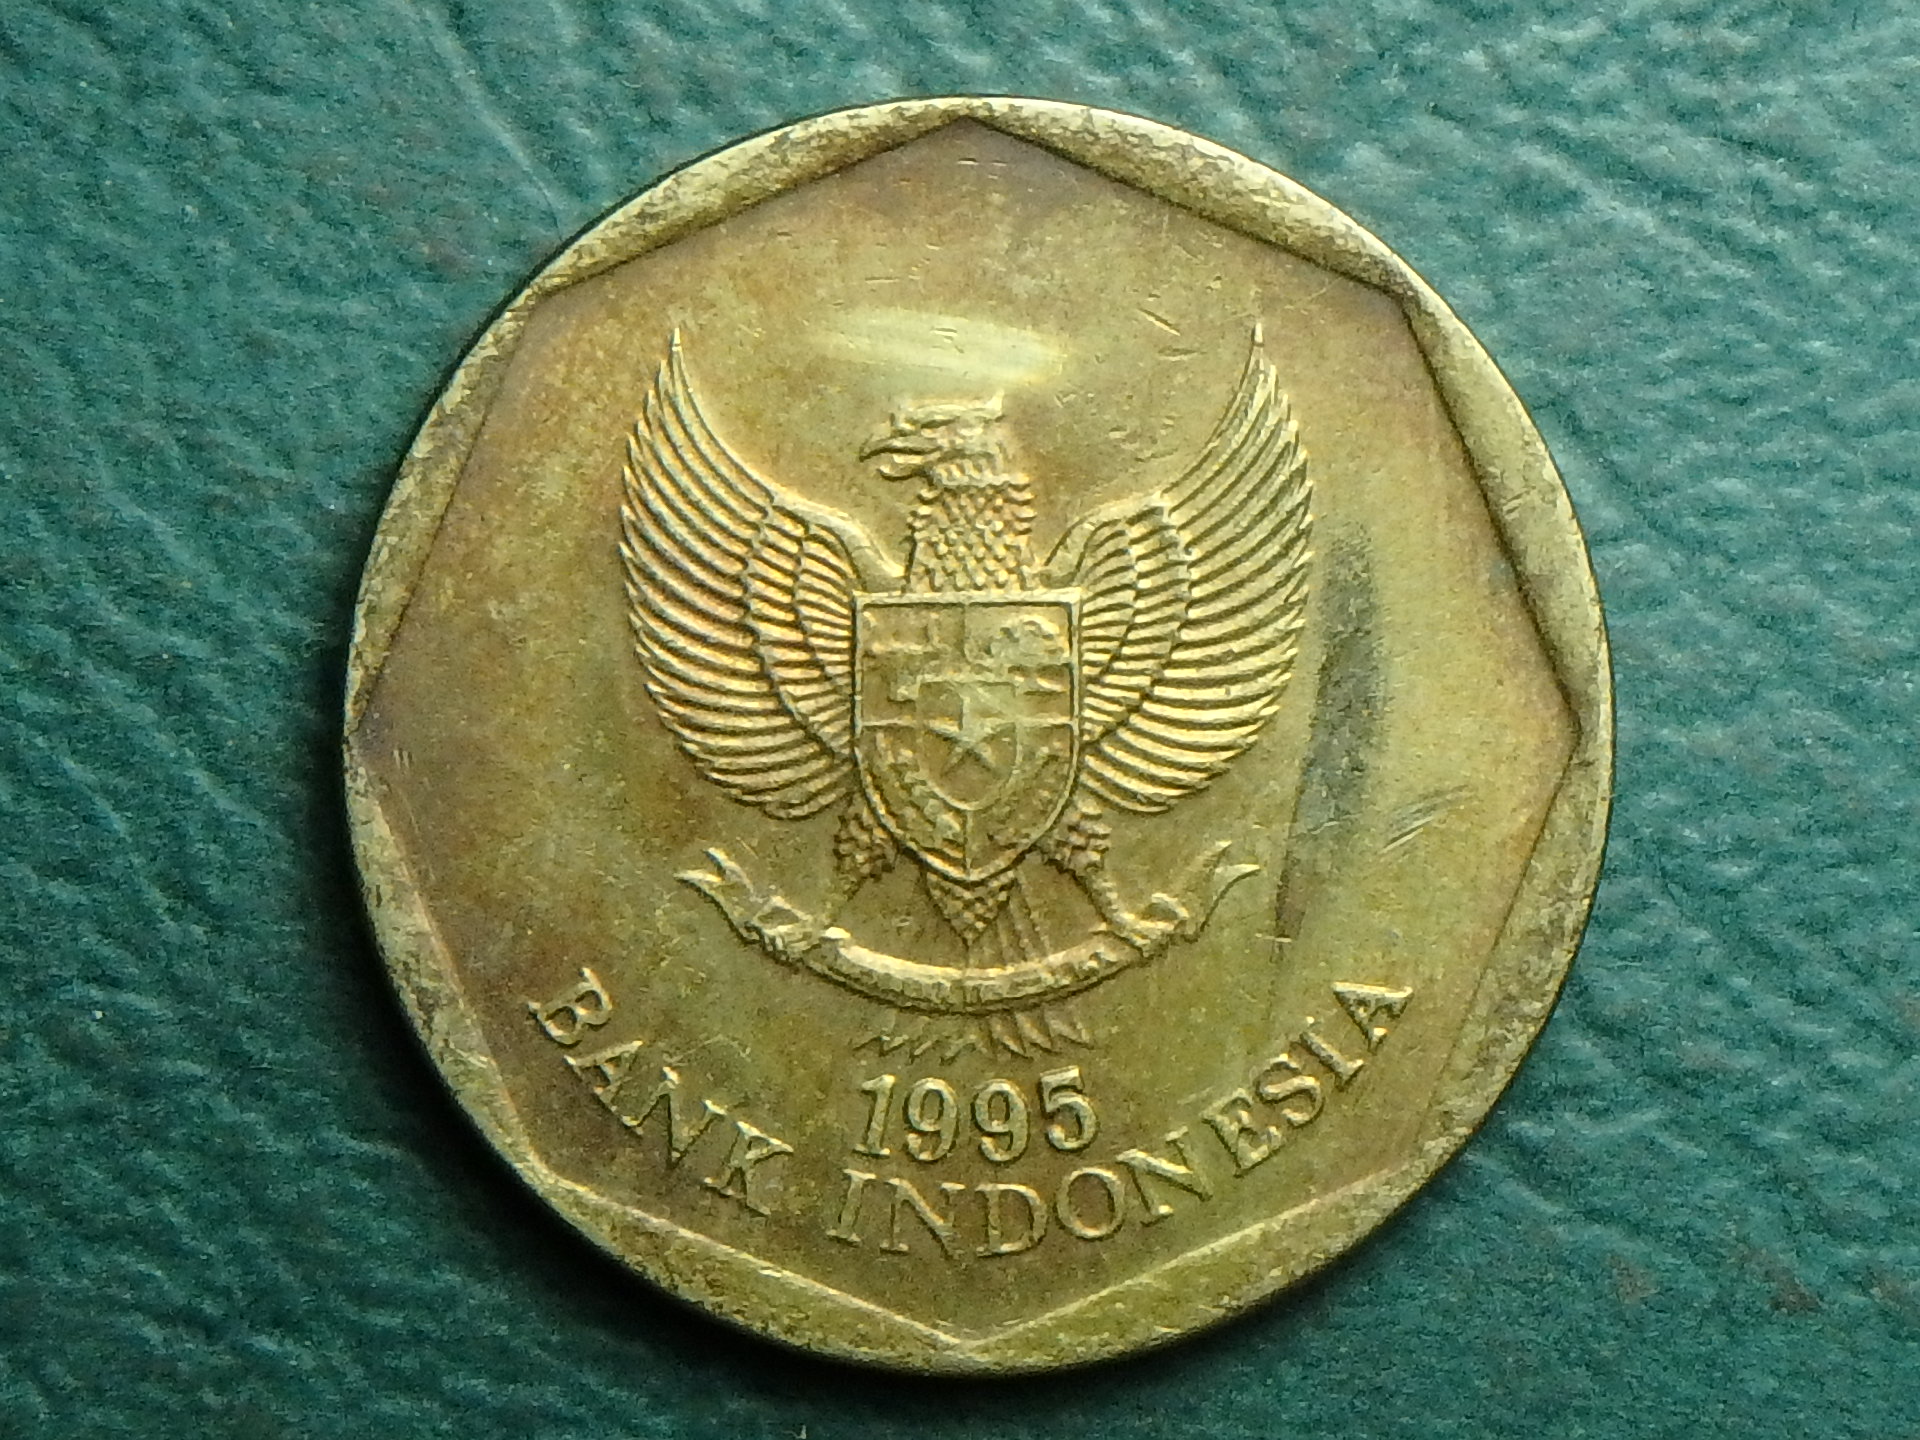 1995 INDO 100 r obv (2).JPG